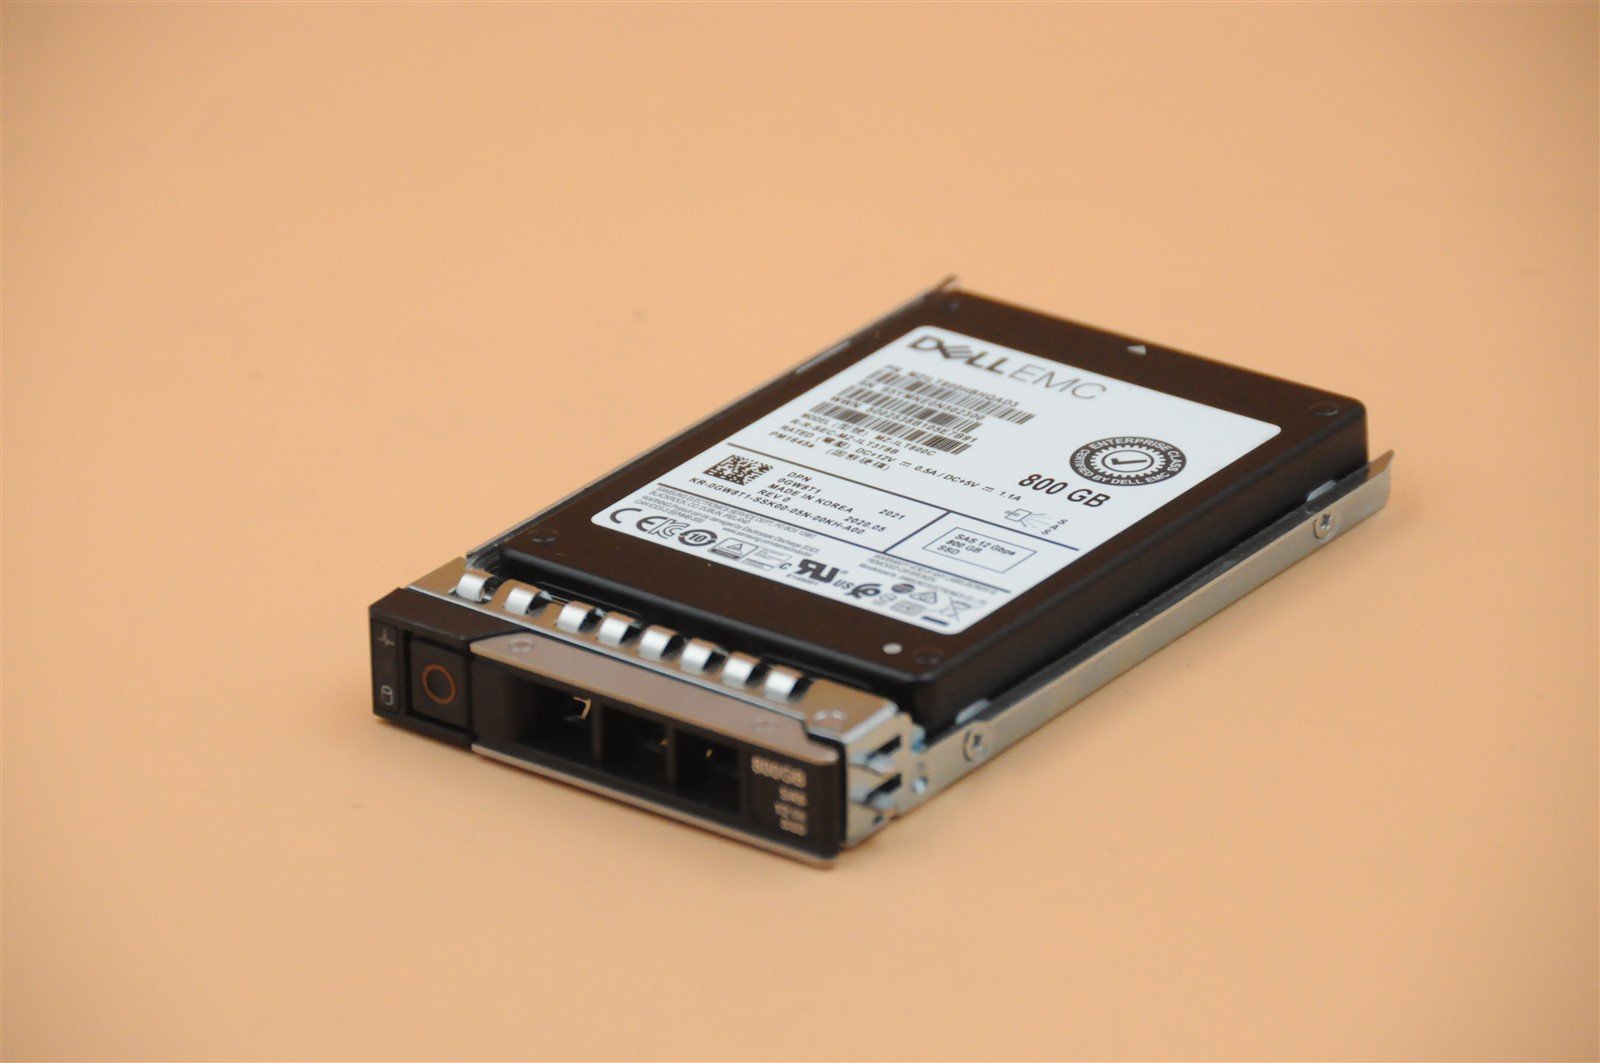 GW8T1 0GW8T1 MZ-ILT800C PM1645A DELL EMC 800GB 12G SFF 2.5" SAS TLC MU SSD